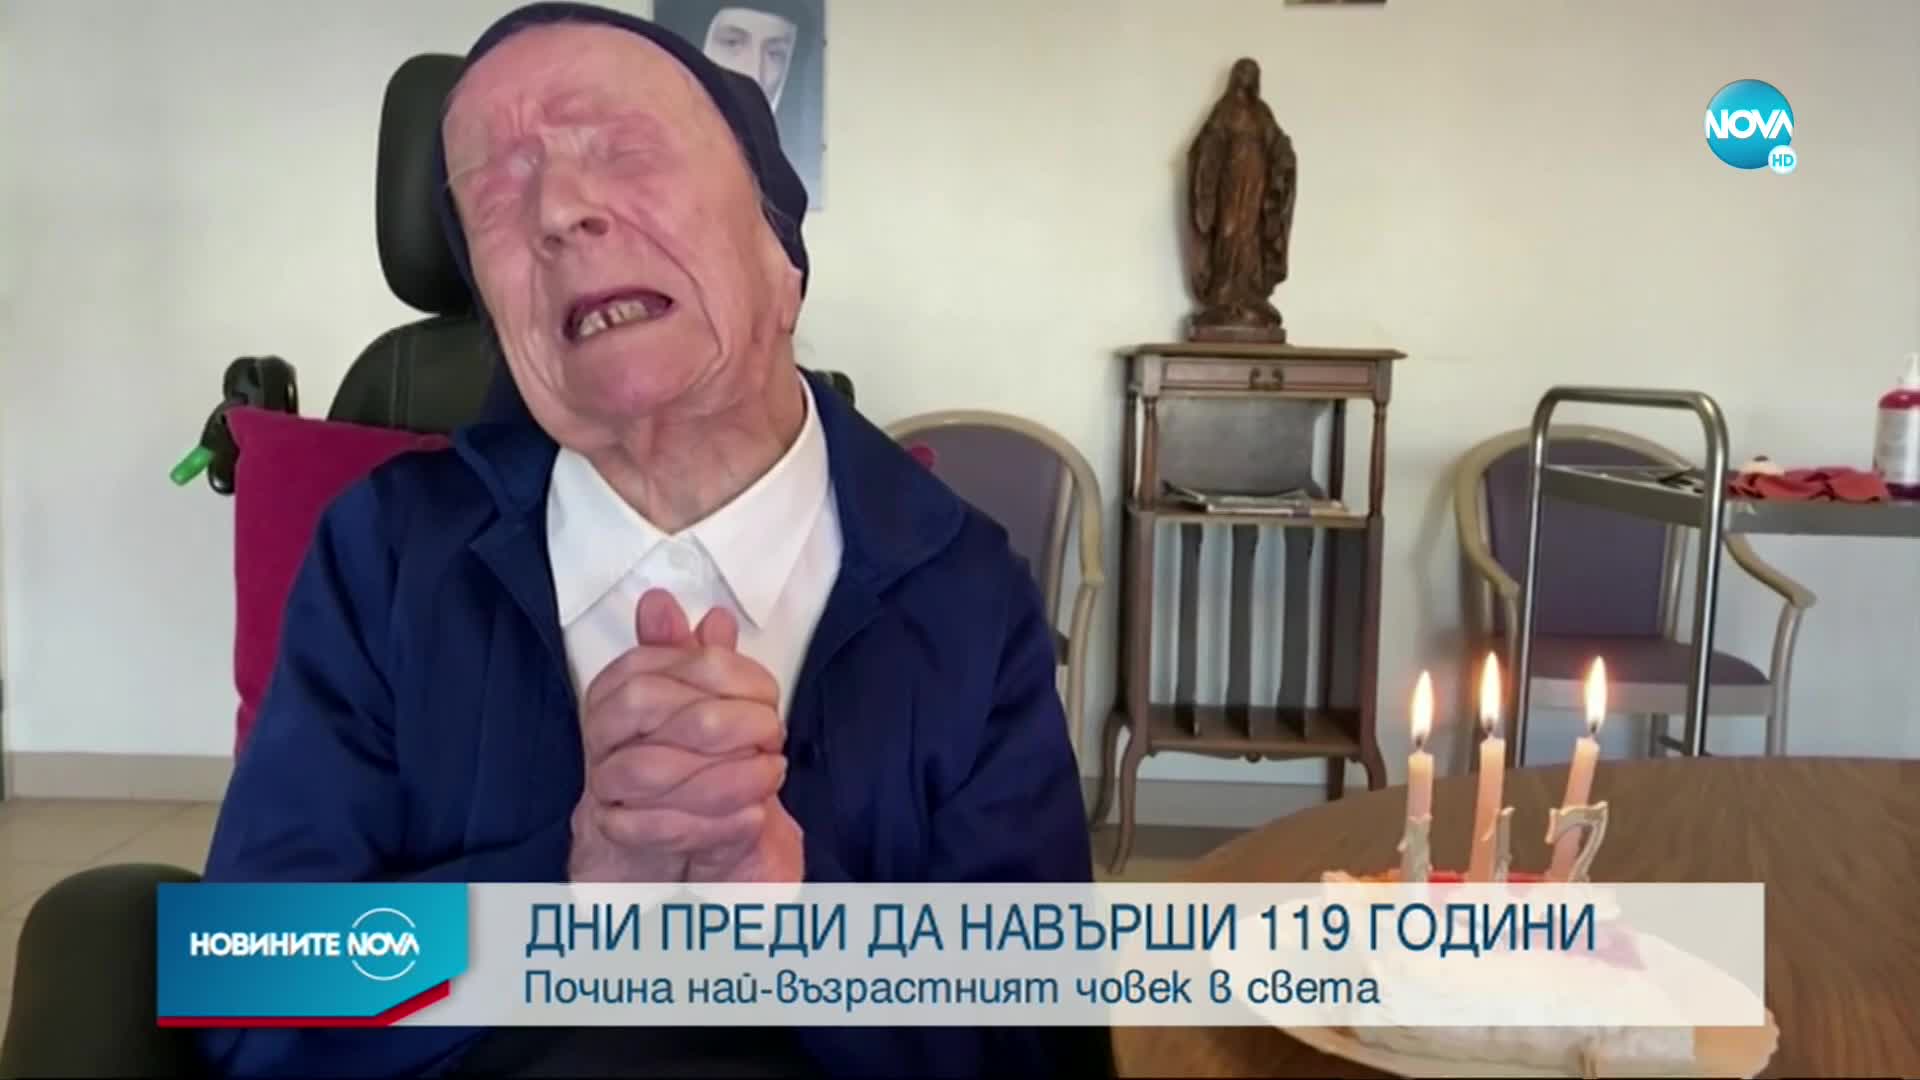 Почина най-възрастният човек в света